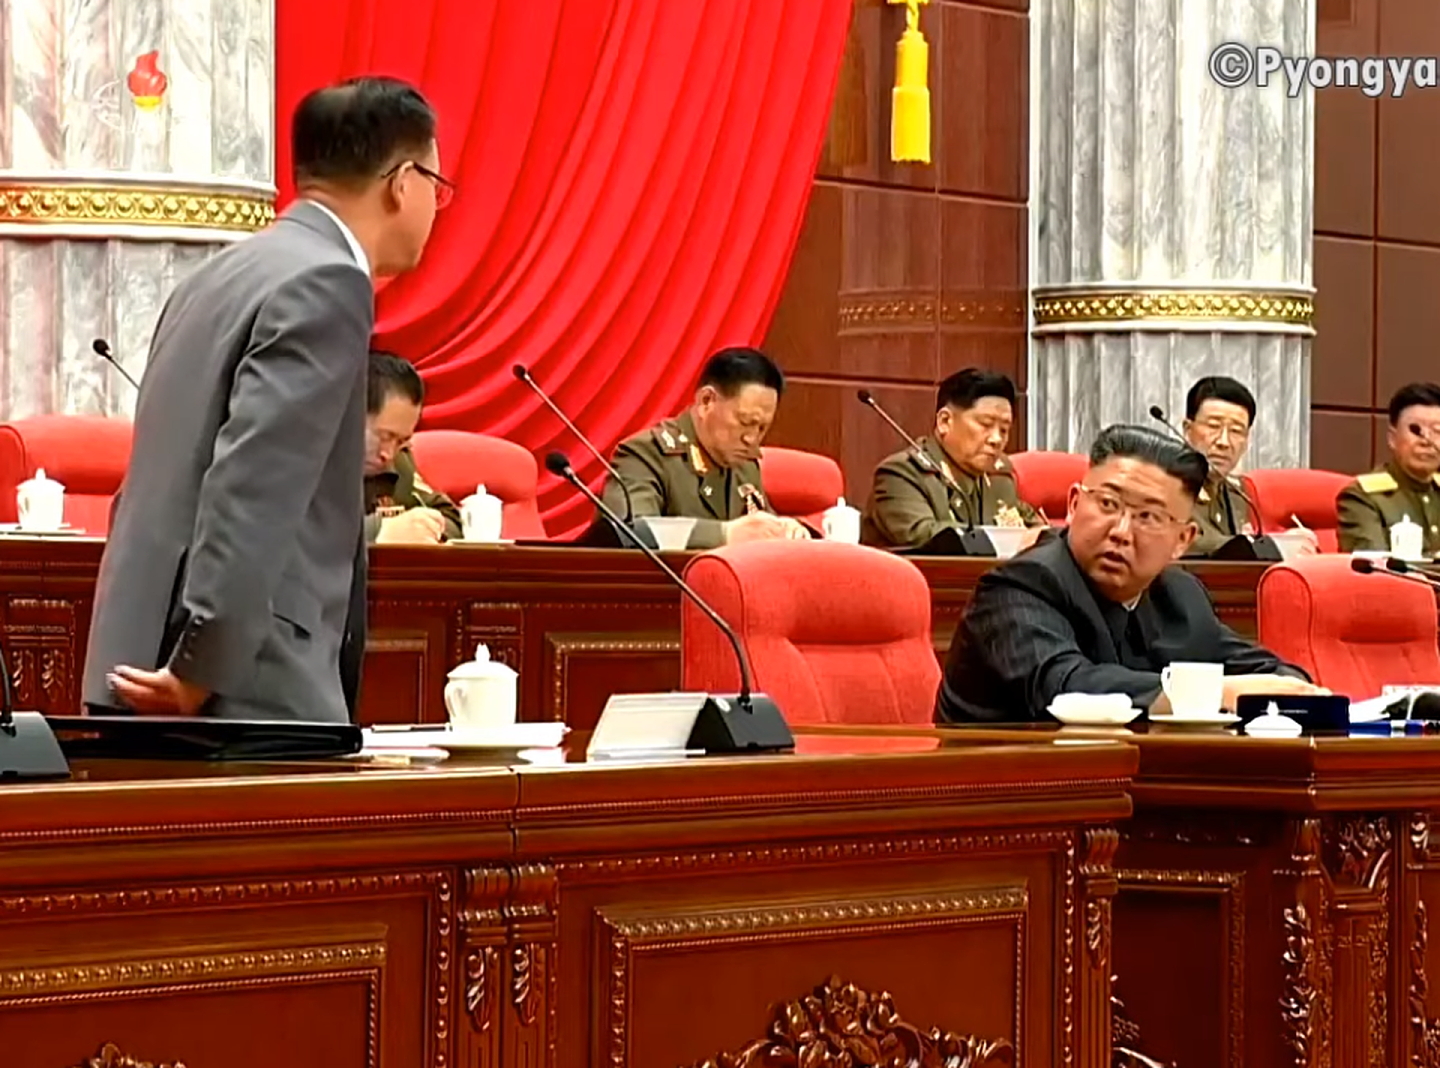 朝鲜领导人金正恩会议期间与赵甬元互动交谈。（朝鲜中央电视台视频截图）